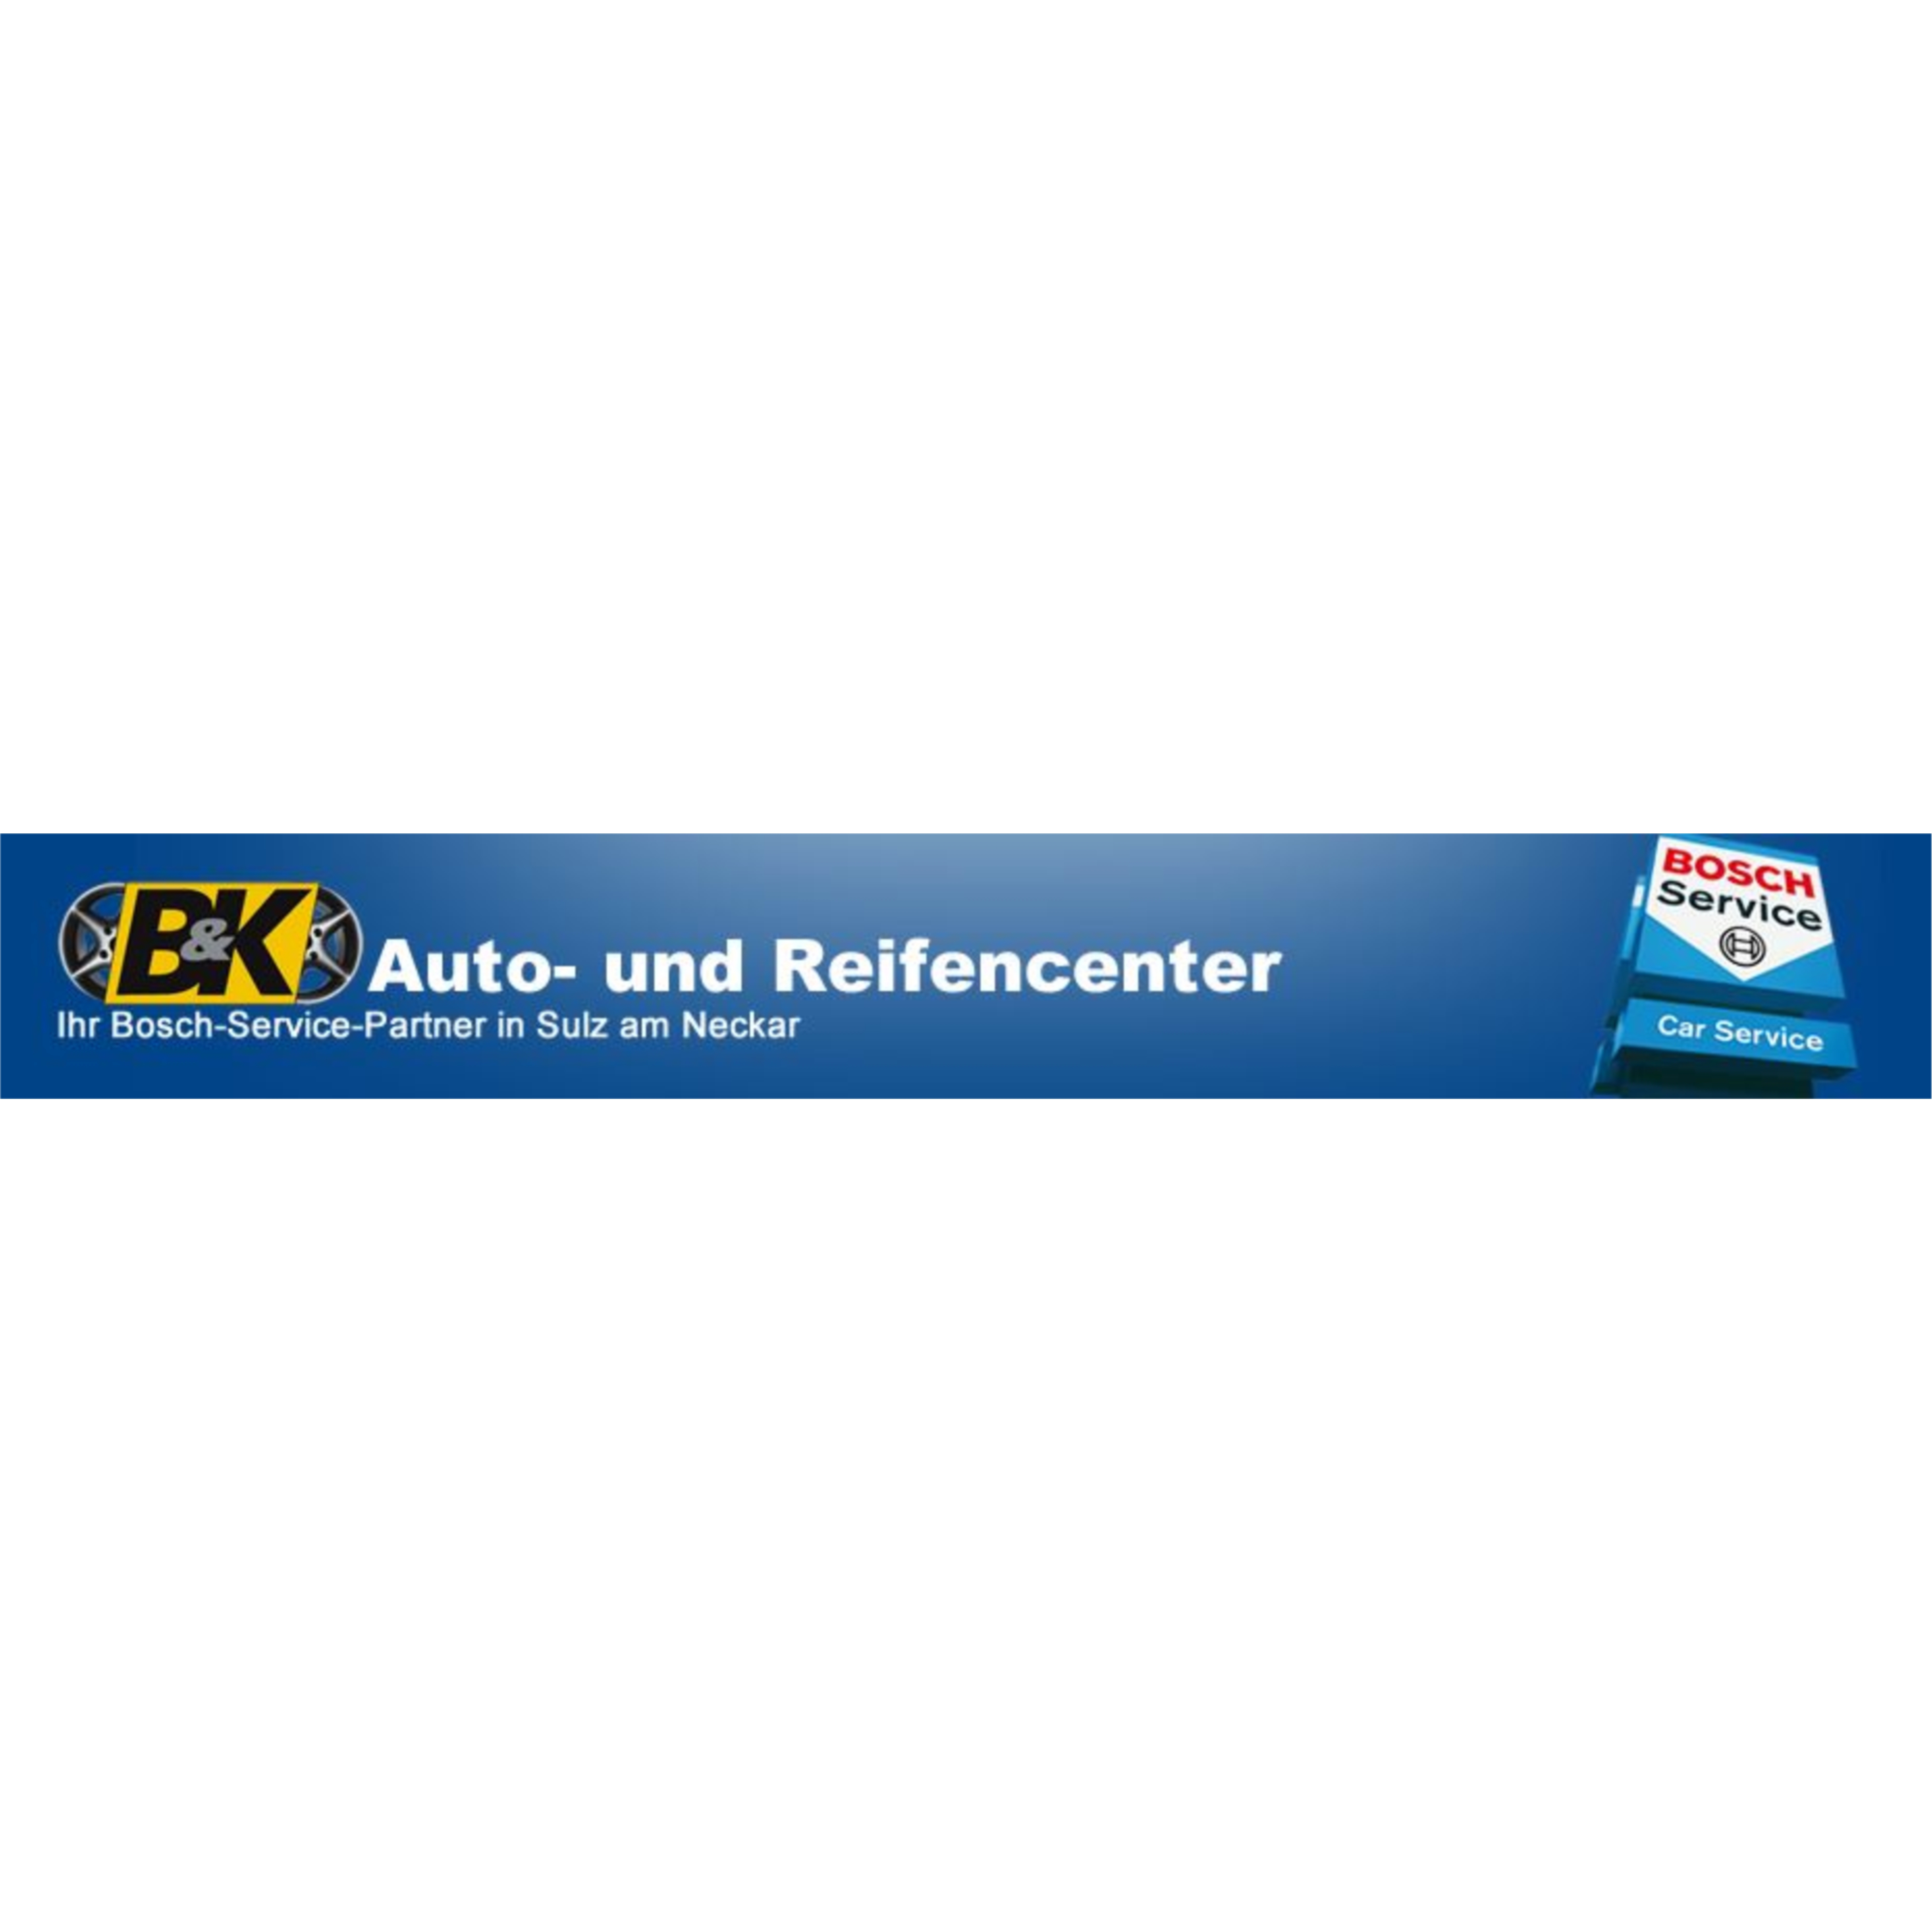 Kundenlogo B & K Auto- und Reifencenter e. K. - Bosch Car Service